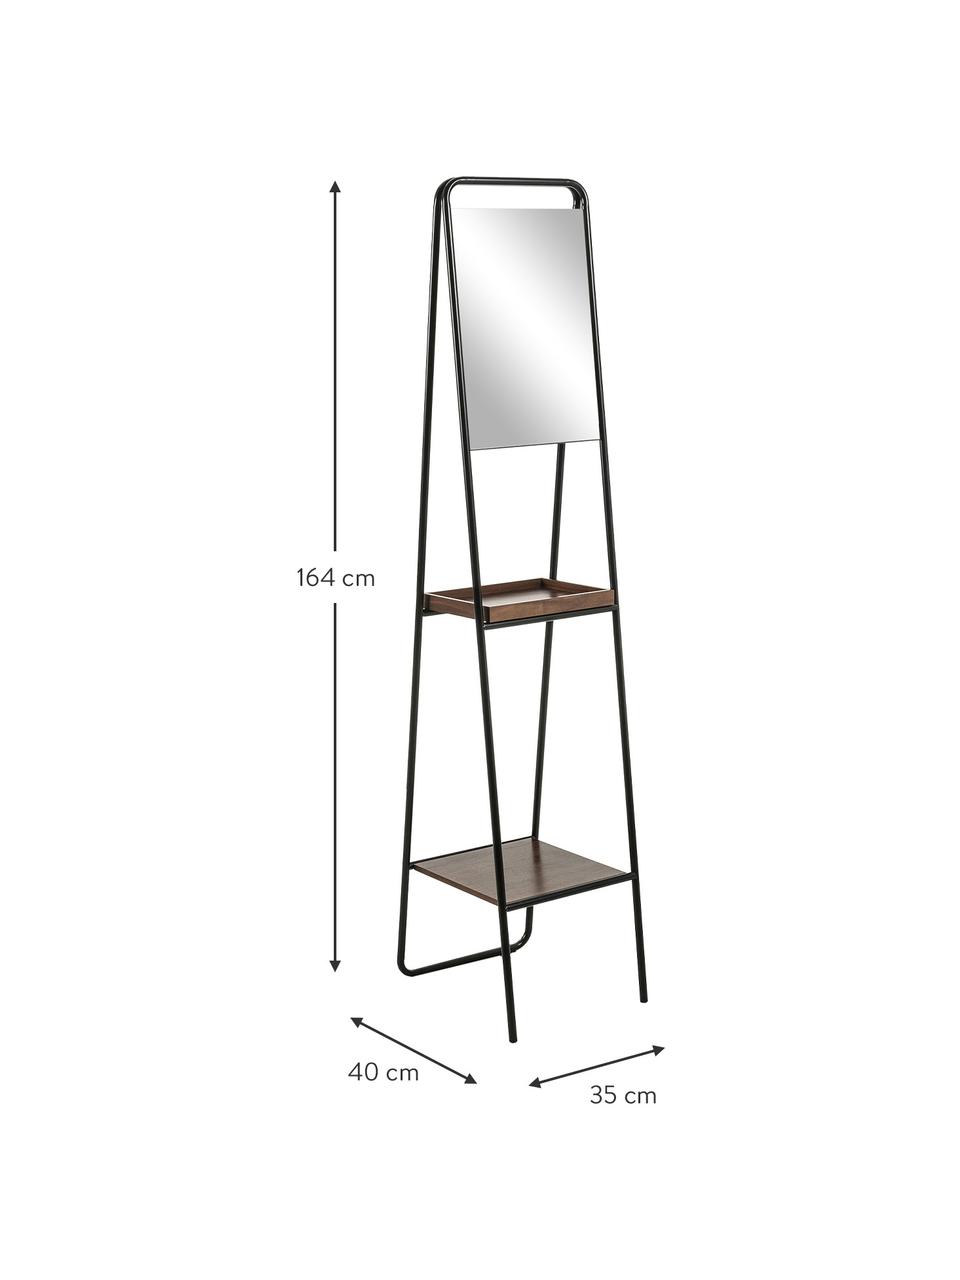 Standspiegel Benneth mit zwei Ablageflächen, Rahmen: Metall, beschichtet, Ablagefläche: Walnussholz, Spiegelfläche: Spiegelglas, Schwarz, 35 x 164 cm